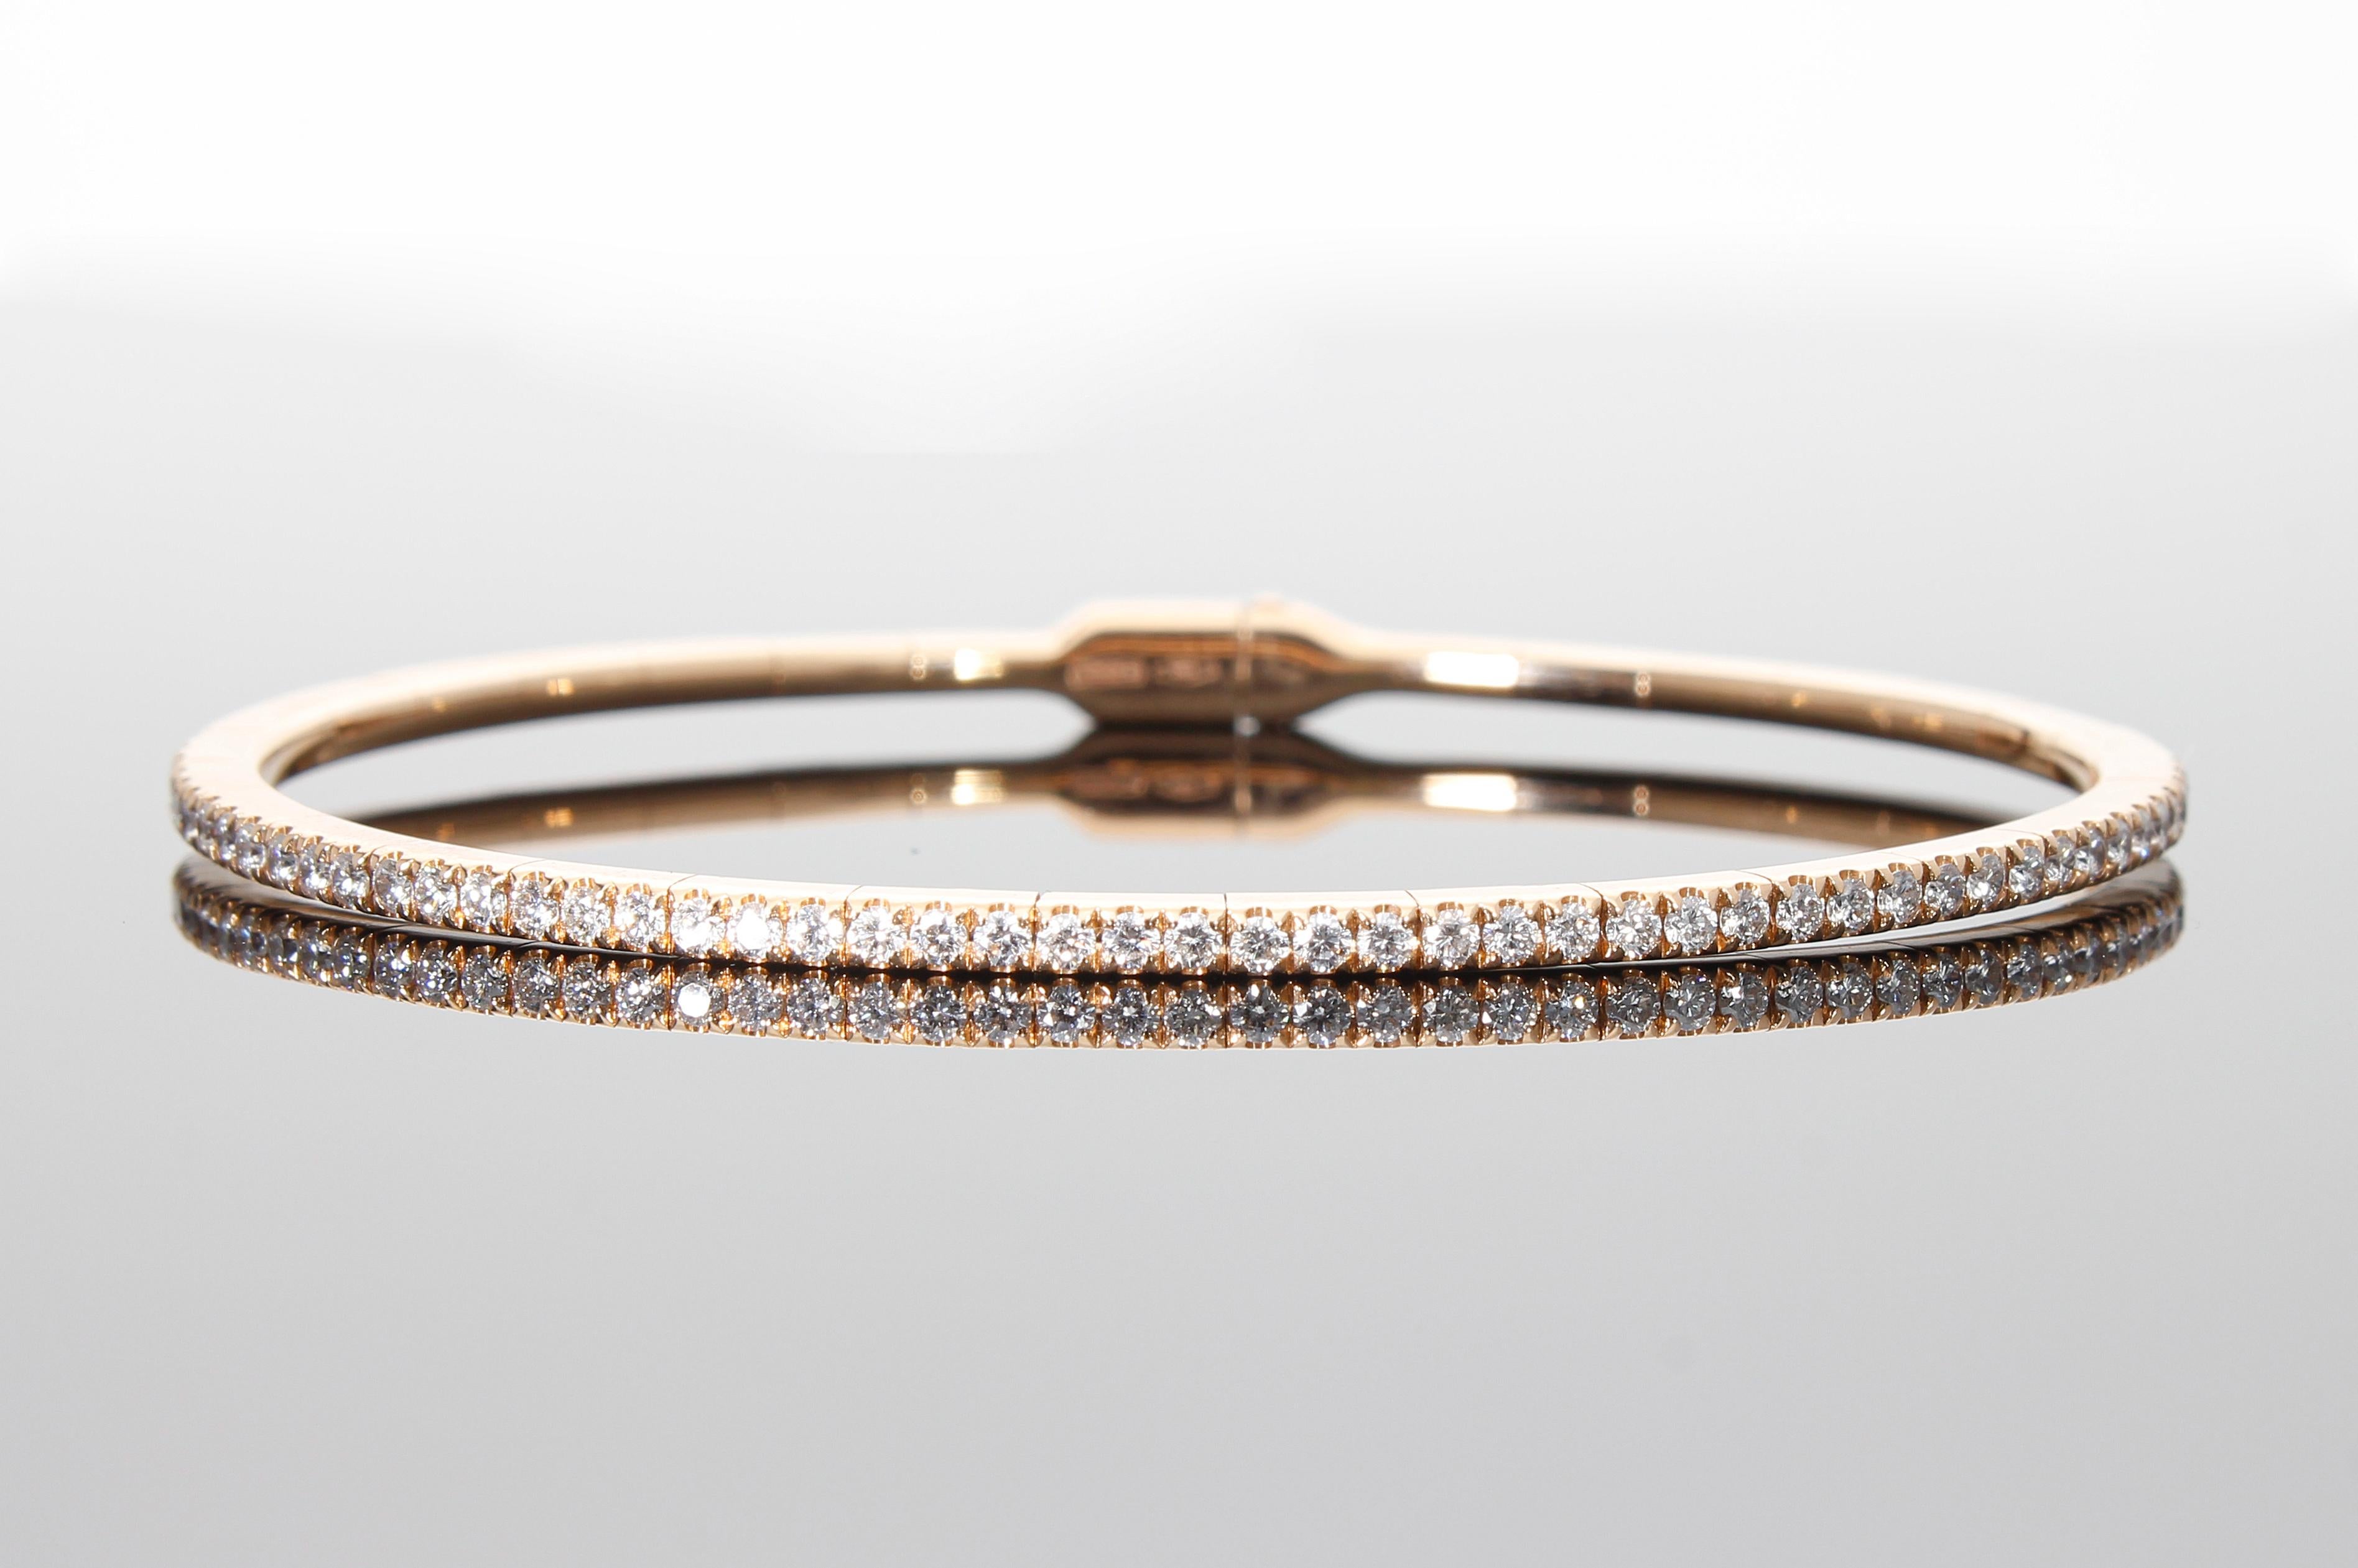 Le bracelet modèle semi-rigide est composé d'une rangée de cinquante et un diamants taille brillant, pour un poids total en carats de 0,75 ct. I
ts est composée de différents segments qui la rendent élastique et confortable à porter. 
Il possède une